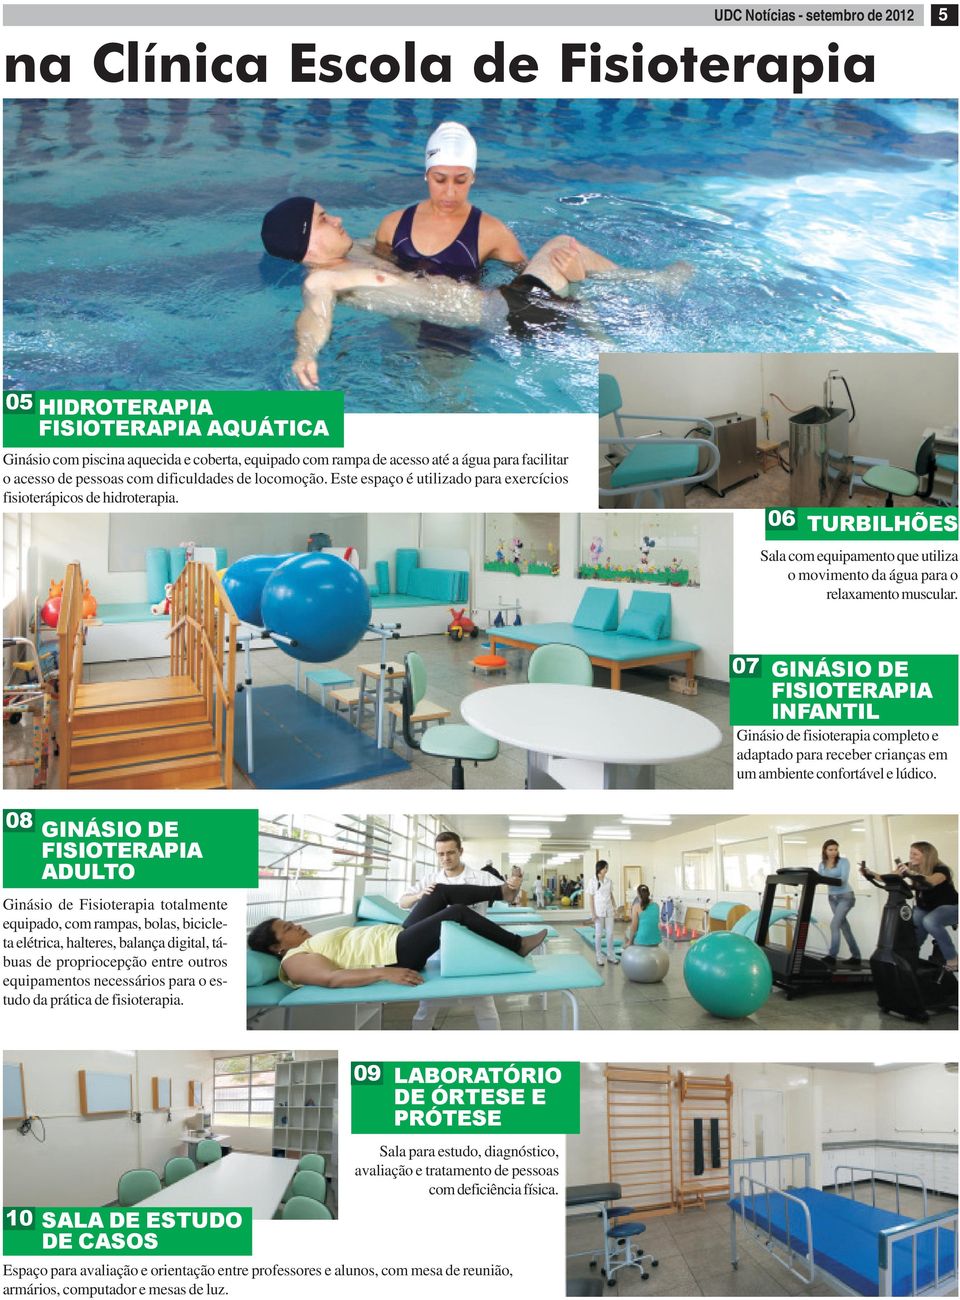 06 TURBILHÕES Sala com equipamento que utiliza o movimento da água para o relaxamento muscular.